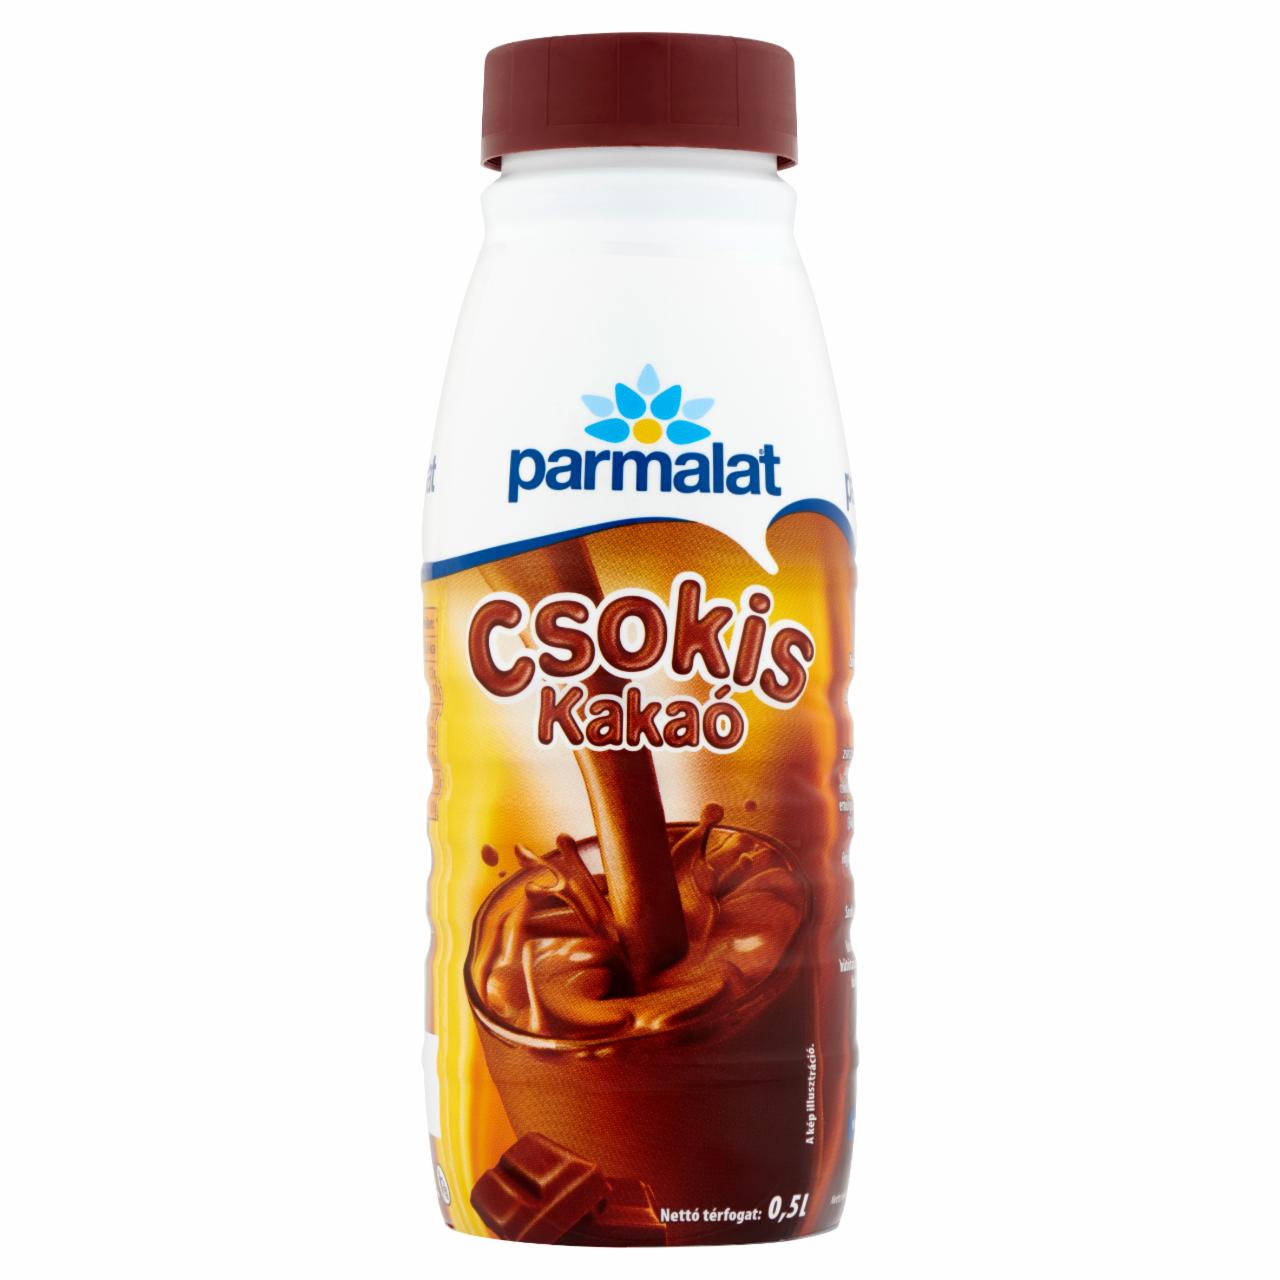 Képek - Parmalat csokis kakaó 0,5 l